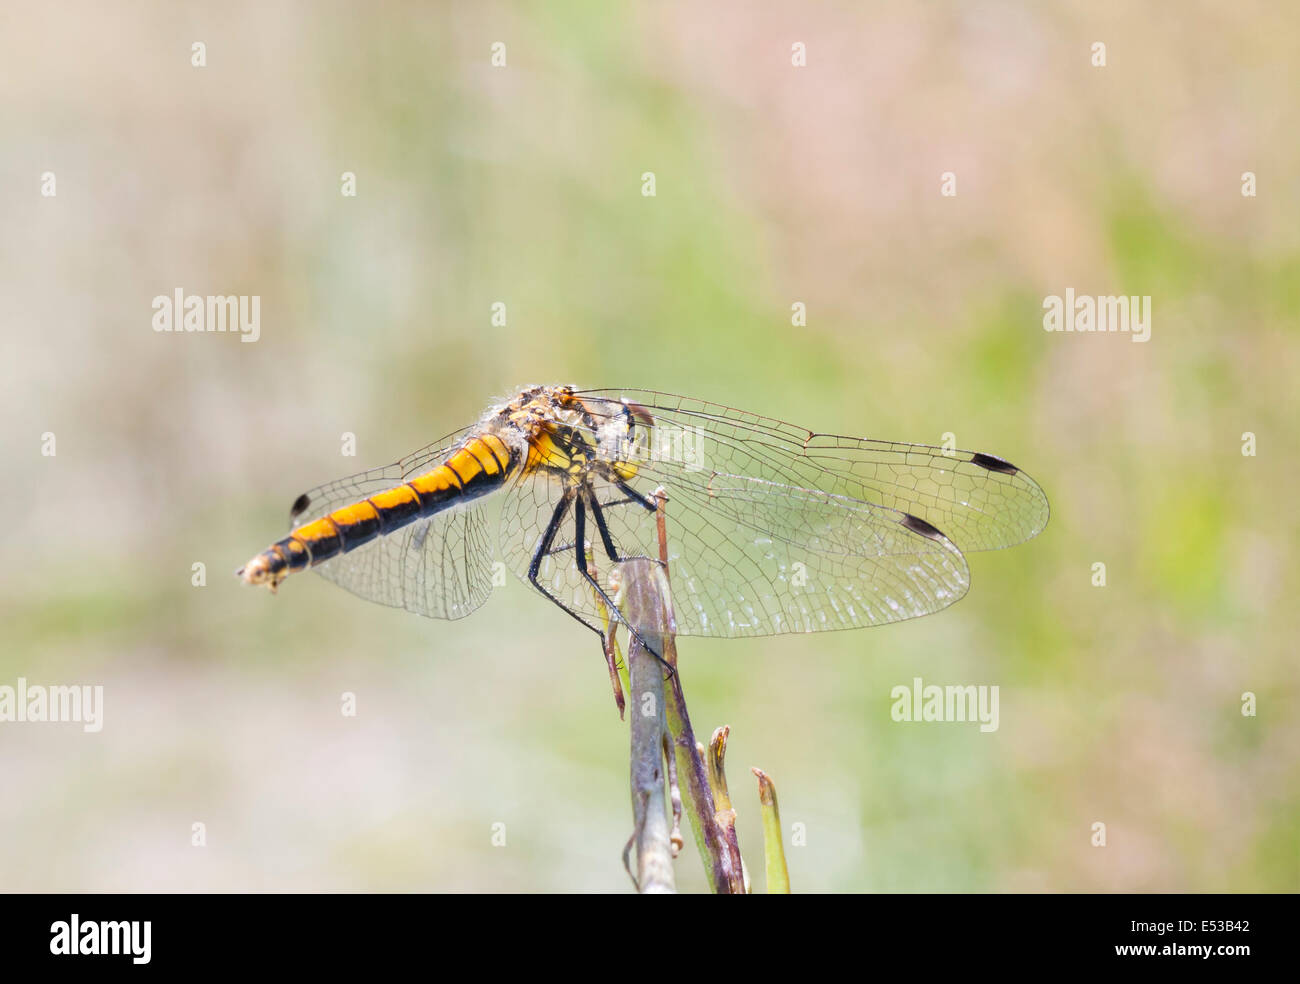 Di colore giallo o arancio dragonfly con modello nero sulla coda di sedersi su un impianto paglia Foto Stock